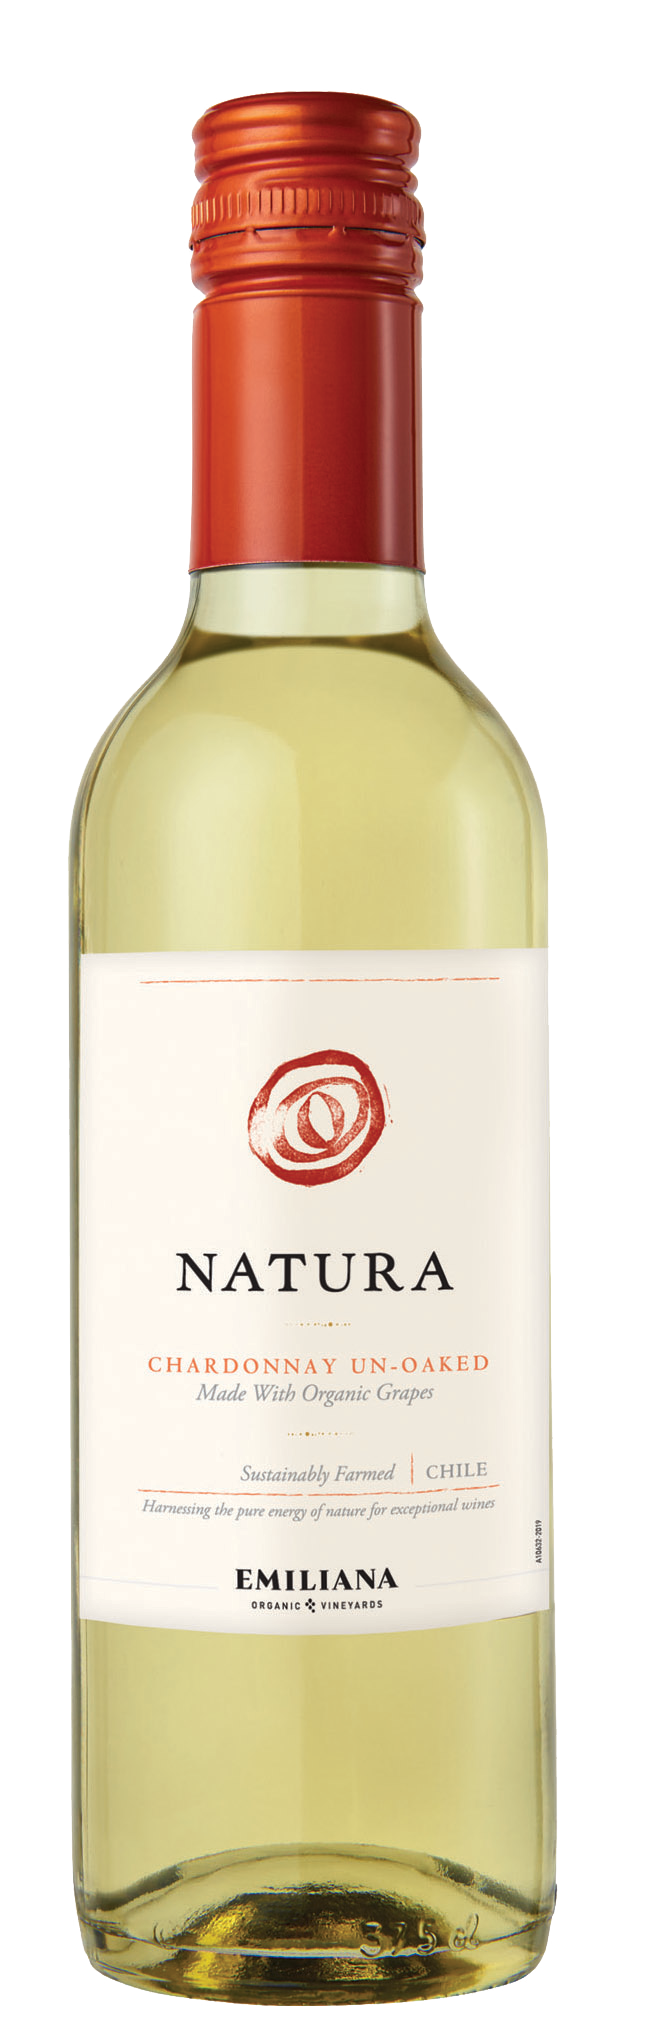 Natura Chardonnay Un-Oaked 2020 375ml